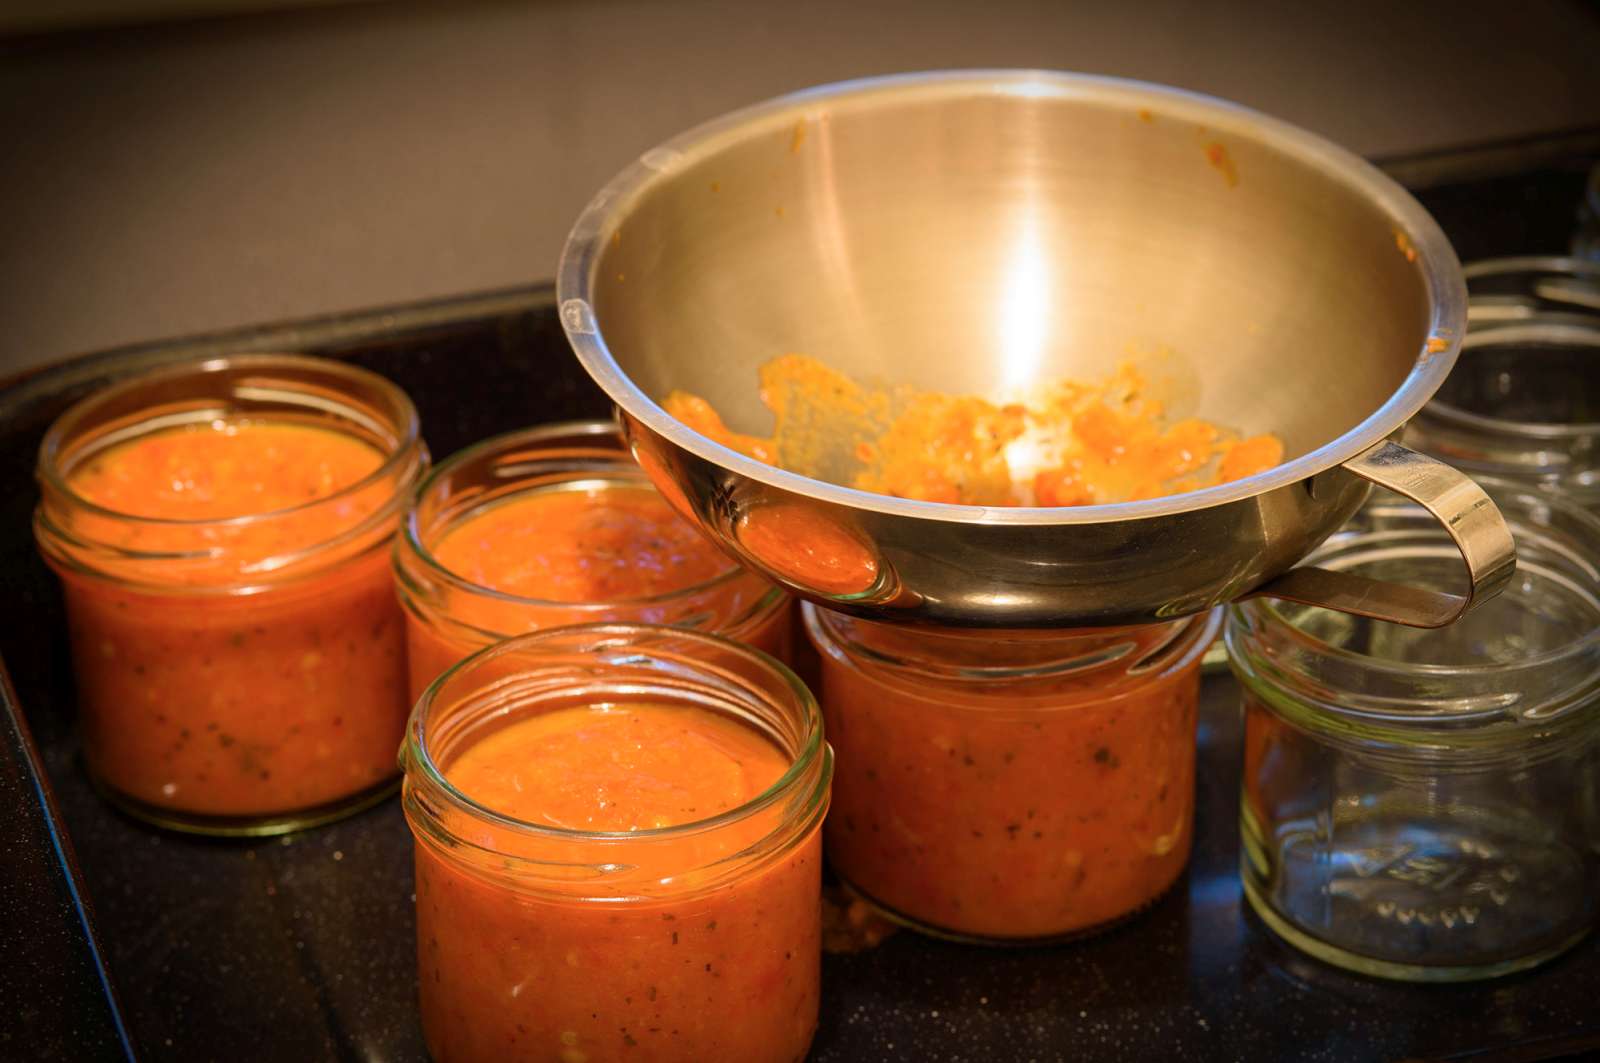 Jarring up. Hot sauce into hot, sterilised jars